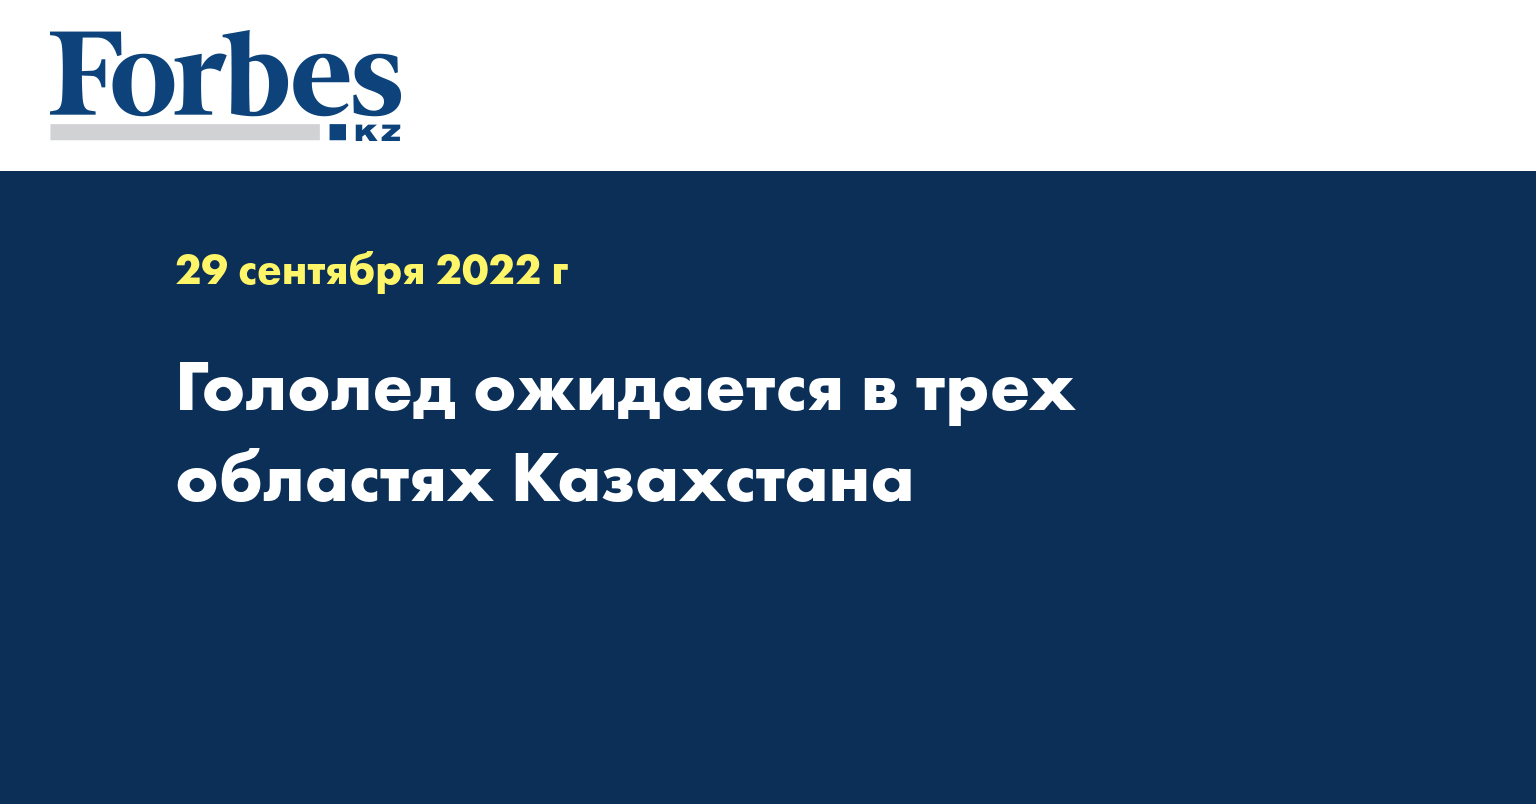 Гололед ожидается в трех областях Казахстана